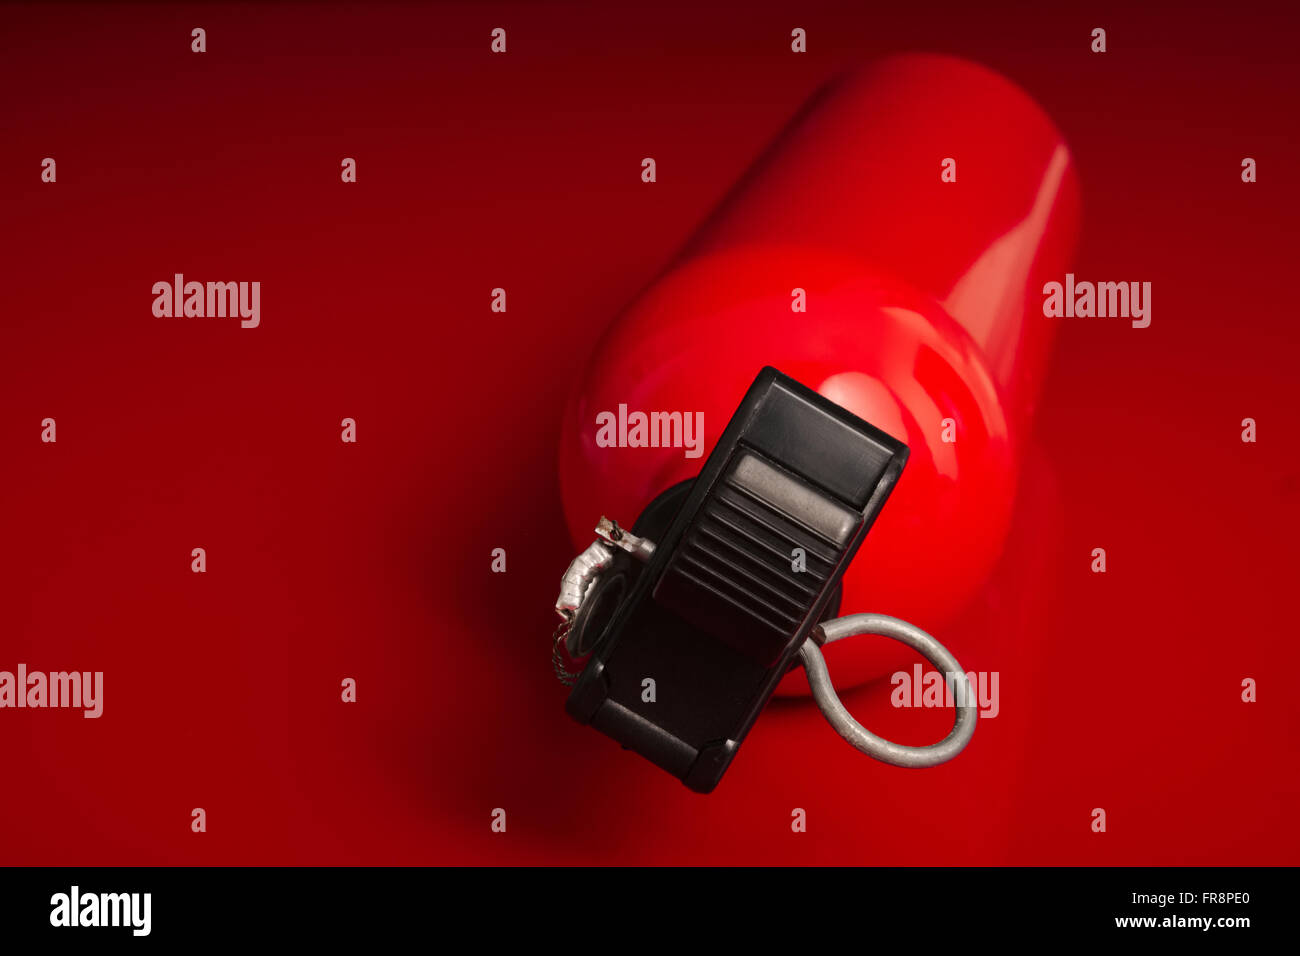 Einen kleinen Feuerlöscher auf eine rote Fläche liegend mit der oberen Düse aus dem Bild zeigen Stockfoto